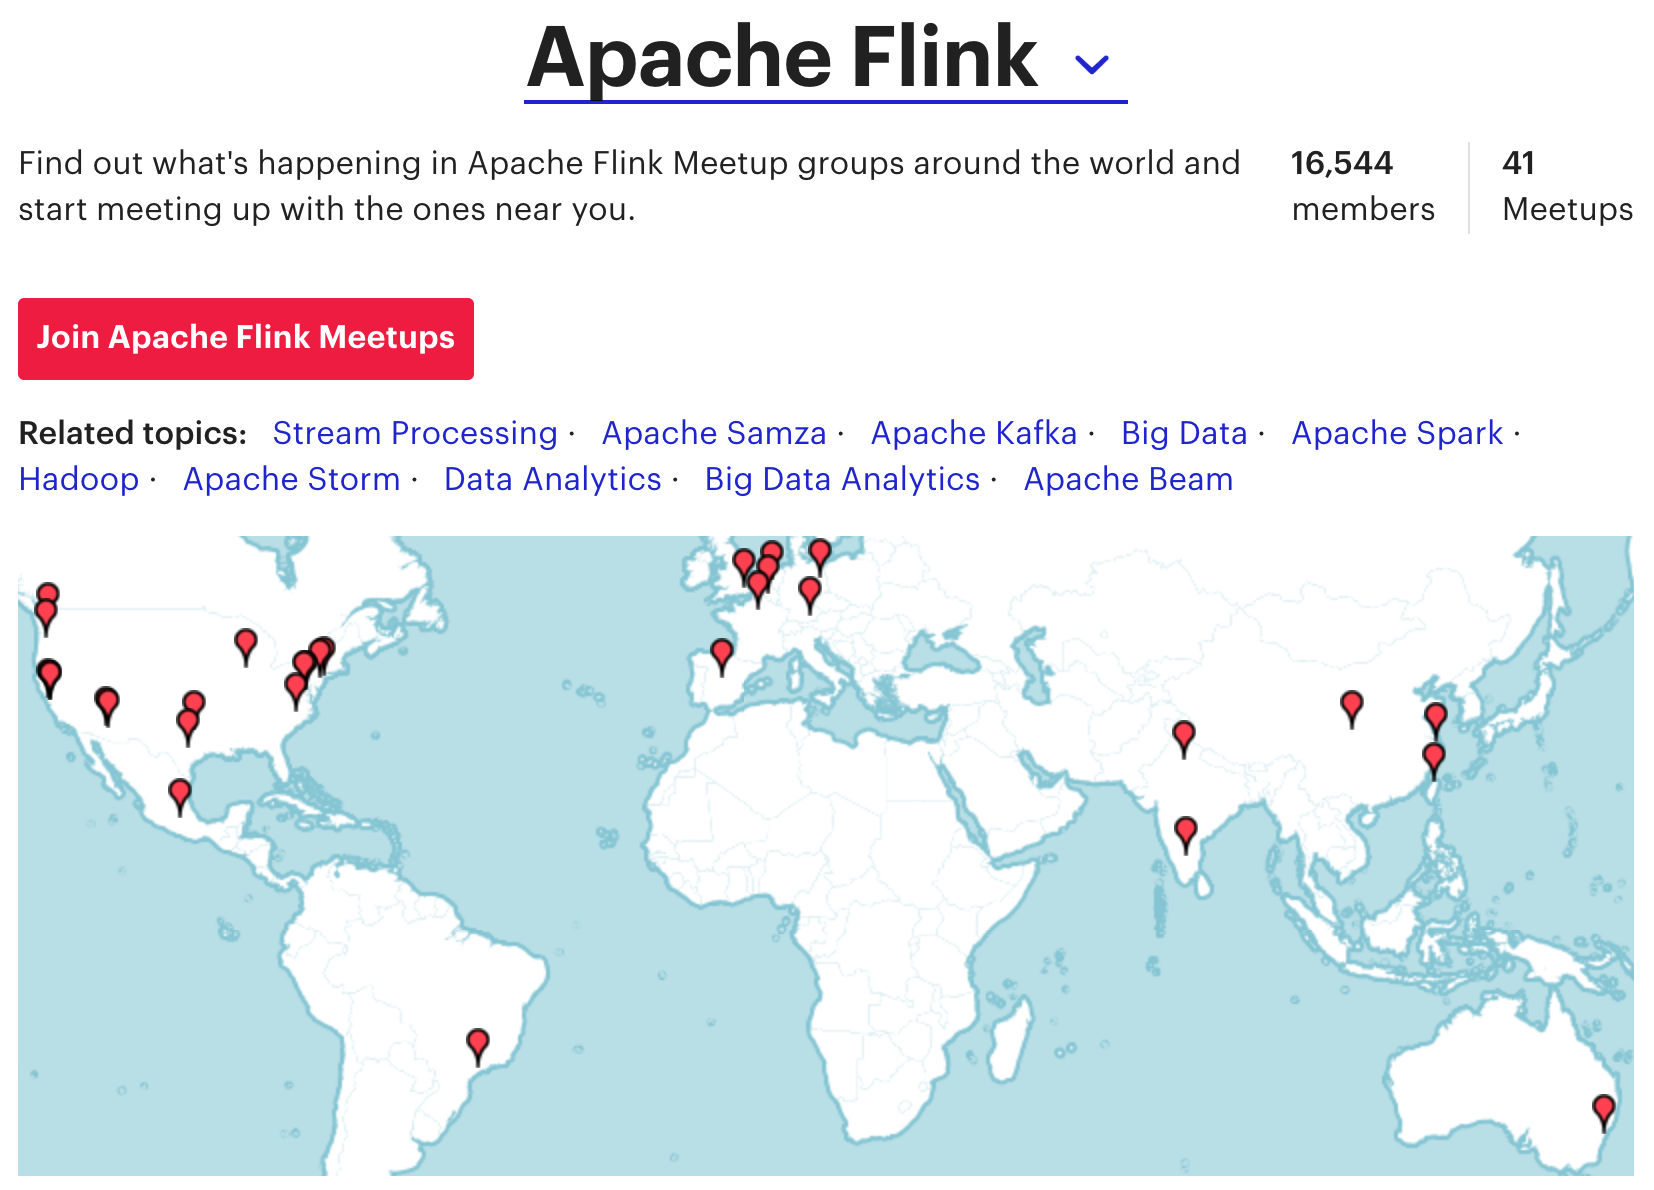 Apache Flink Meetup Map